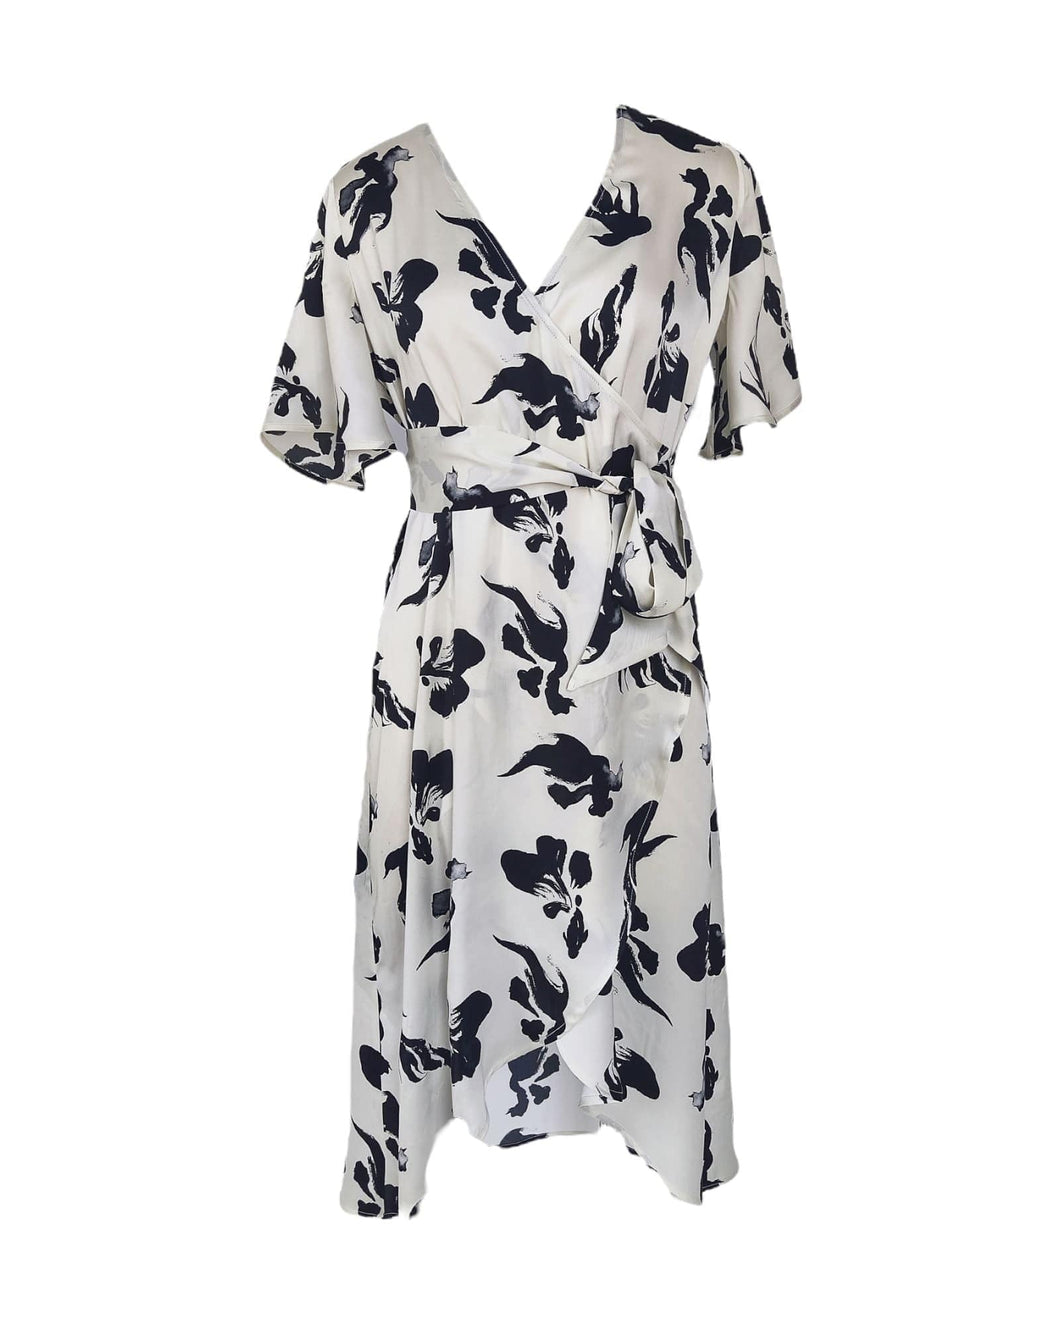 Anaphe Thick Strap Dress (bra friendly) XS/S Multiway Wrap Silk Dress - Koi Print